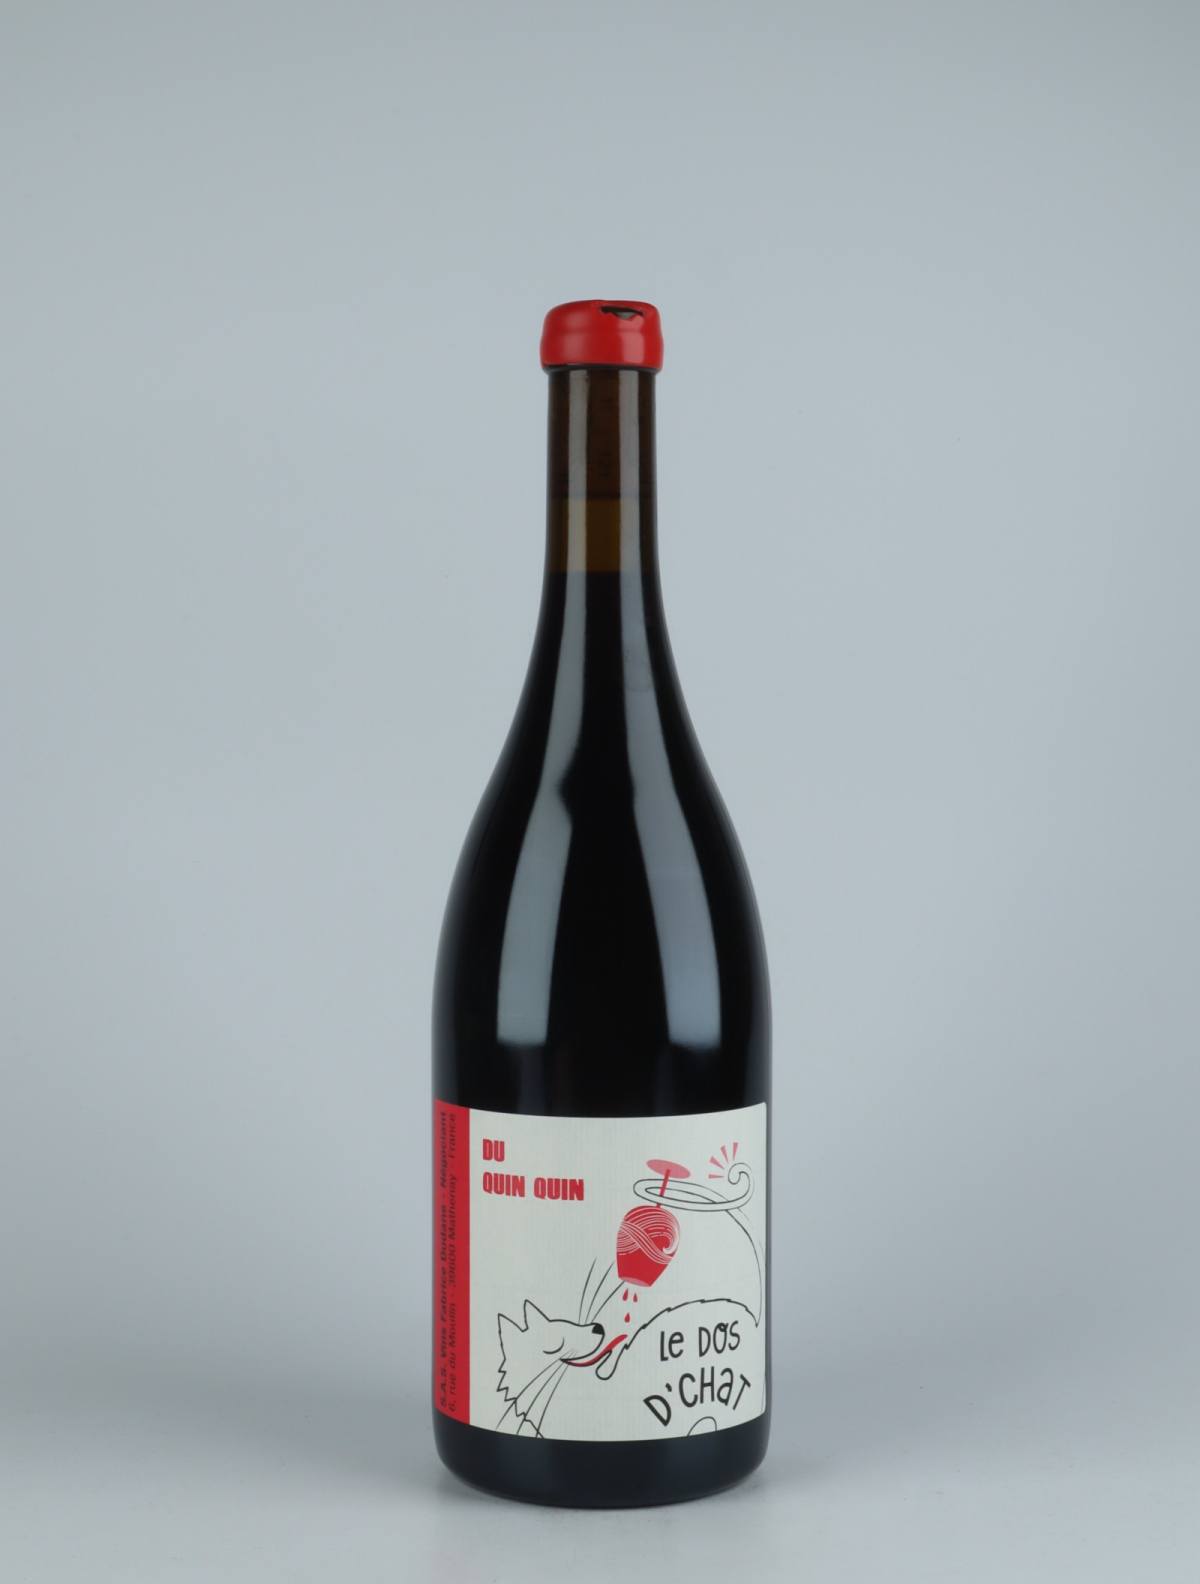 En flaske 2020 Du Quin Quin Rødvin fra Fabrice Dodane, Jura i Frankrig